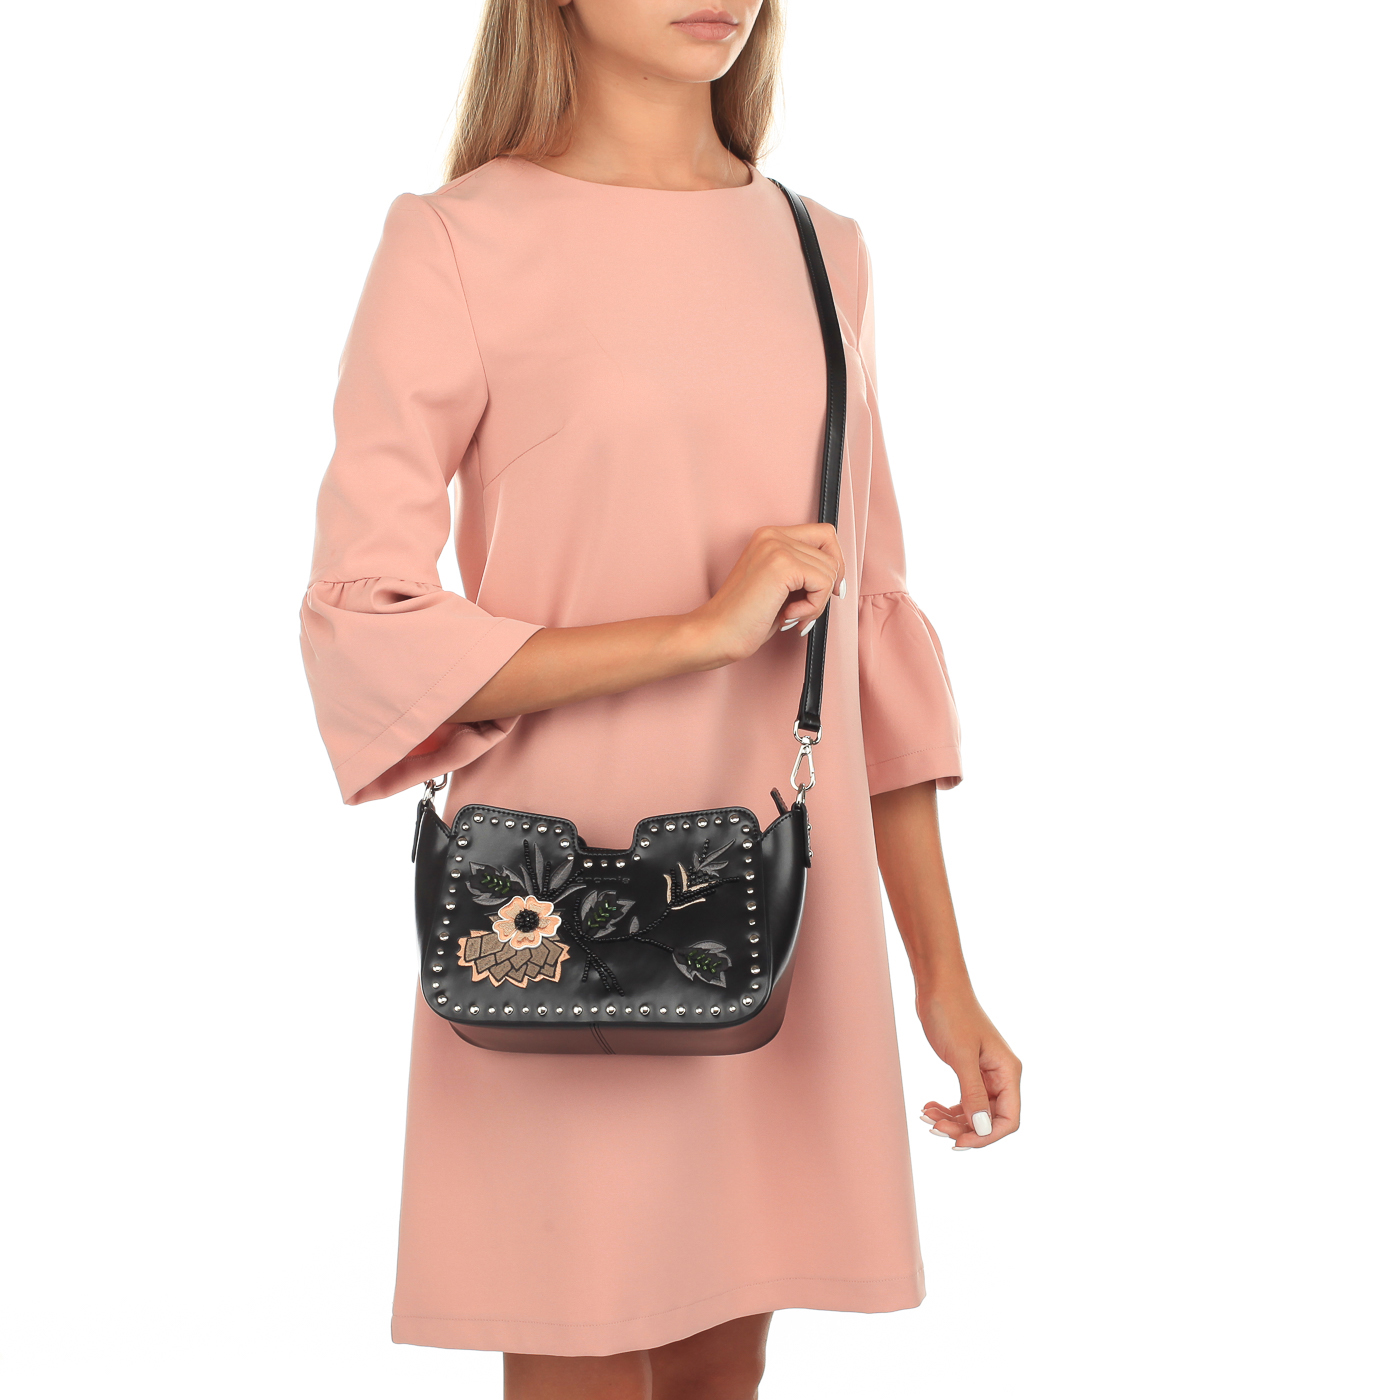 Кожаная сумочка с вышивкой Cromia Rio